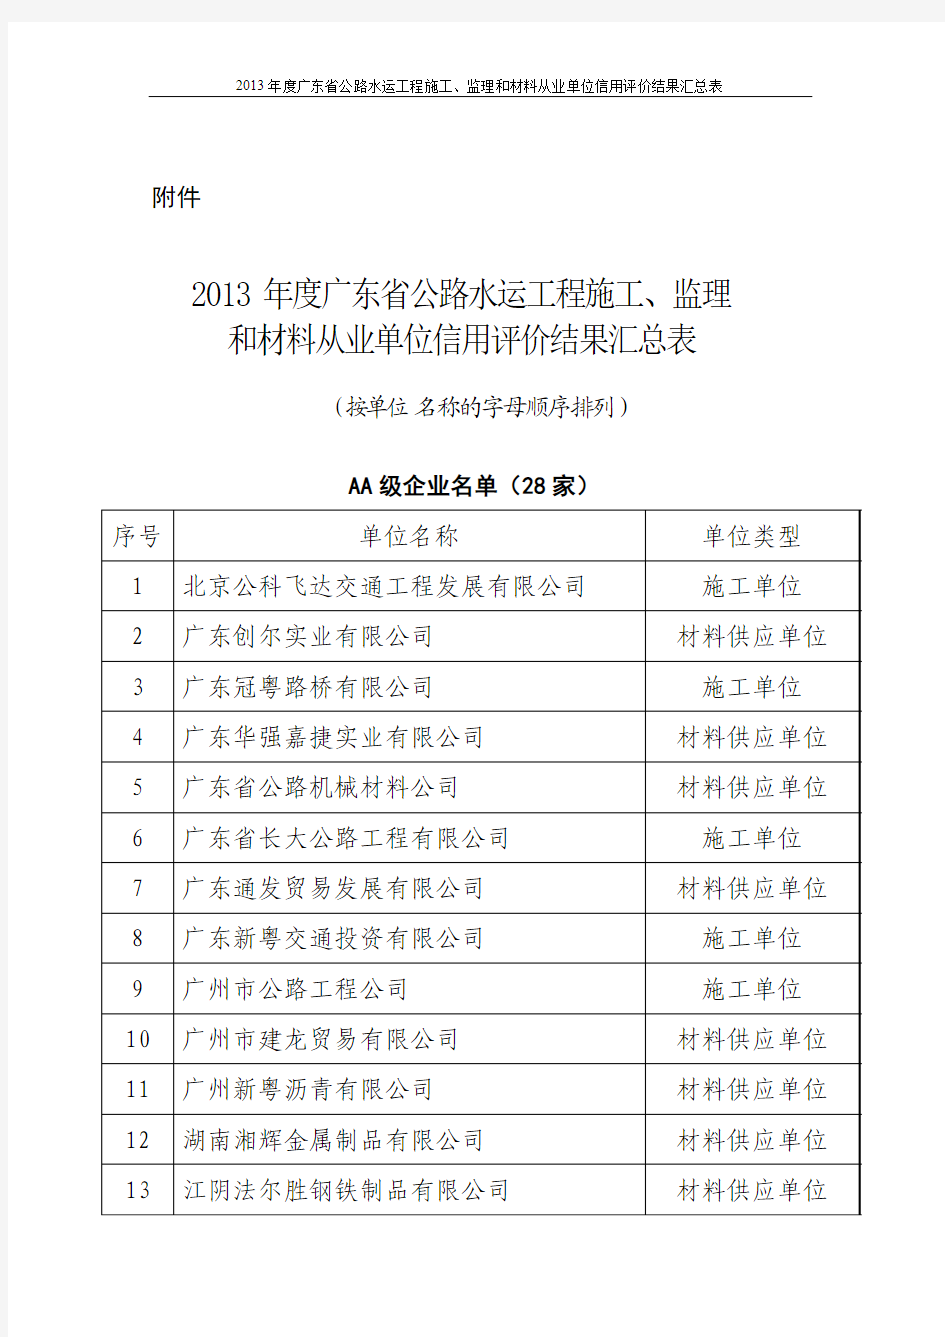 2013年度广东省公路水运工程施工、监理和材料从业单位信用评价结果汇总表